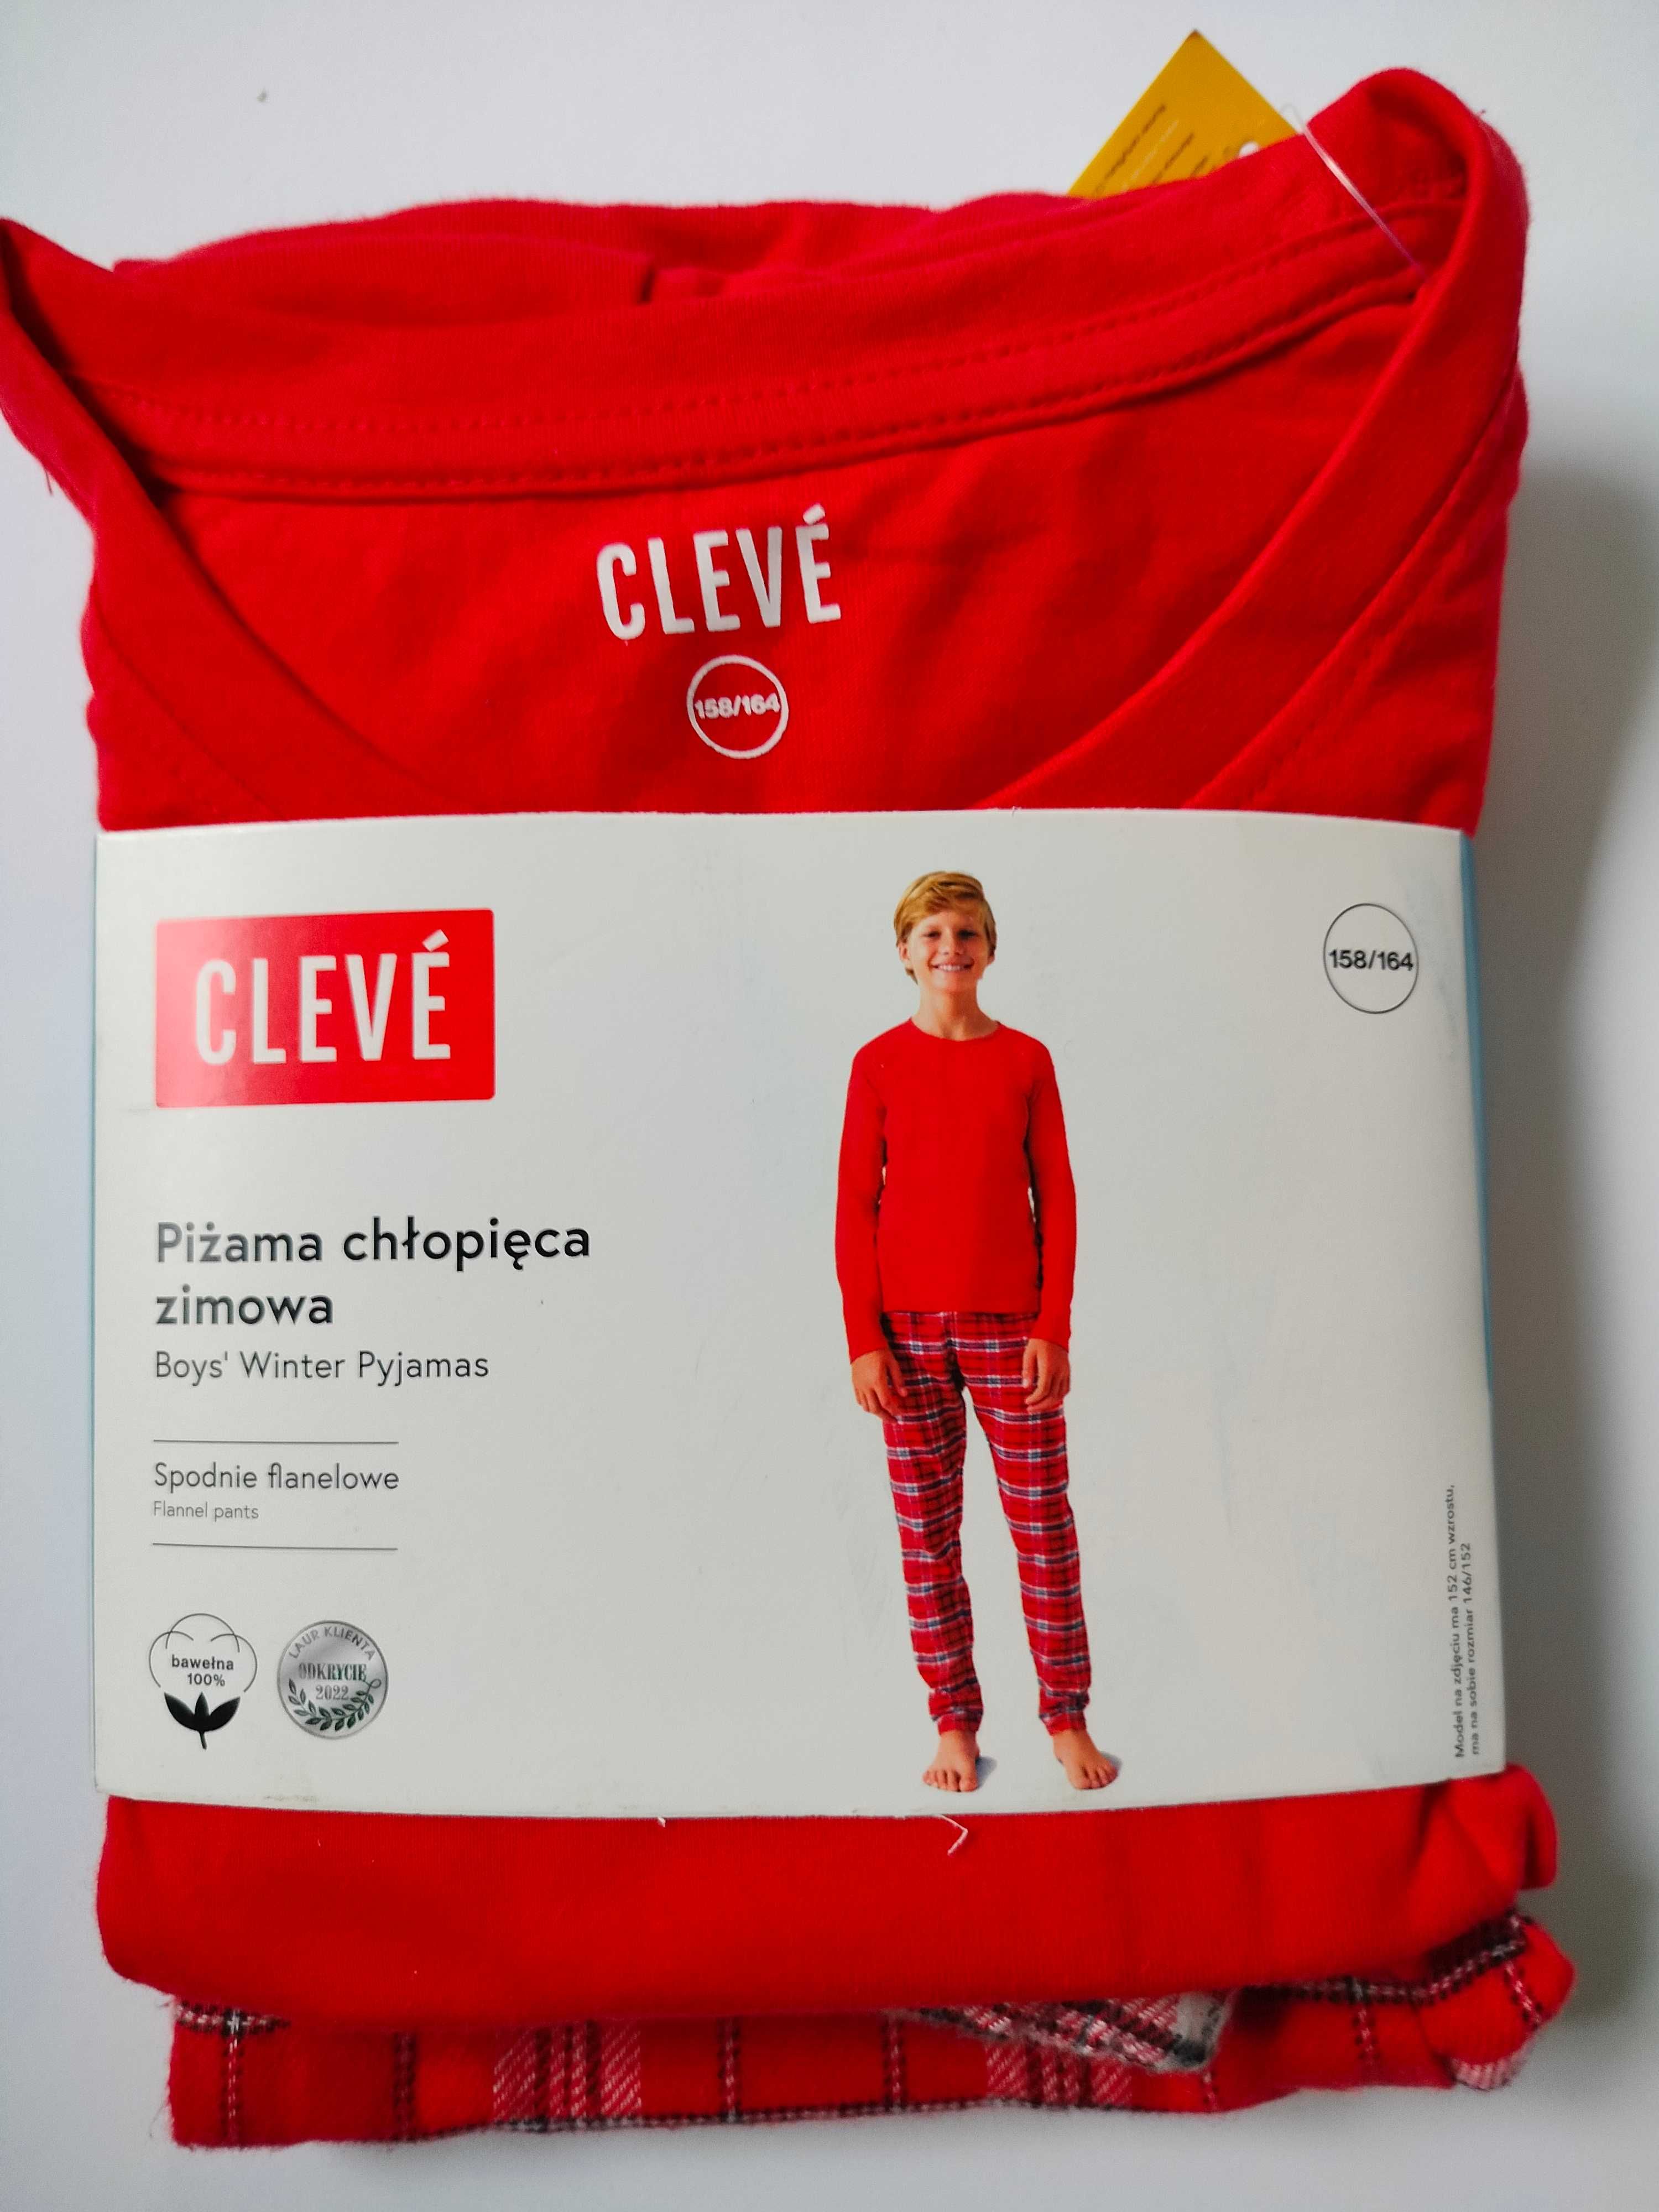 Piżama chłopięca Cleve bawełniana 2cz 158 164 świąteczna